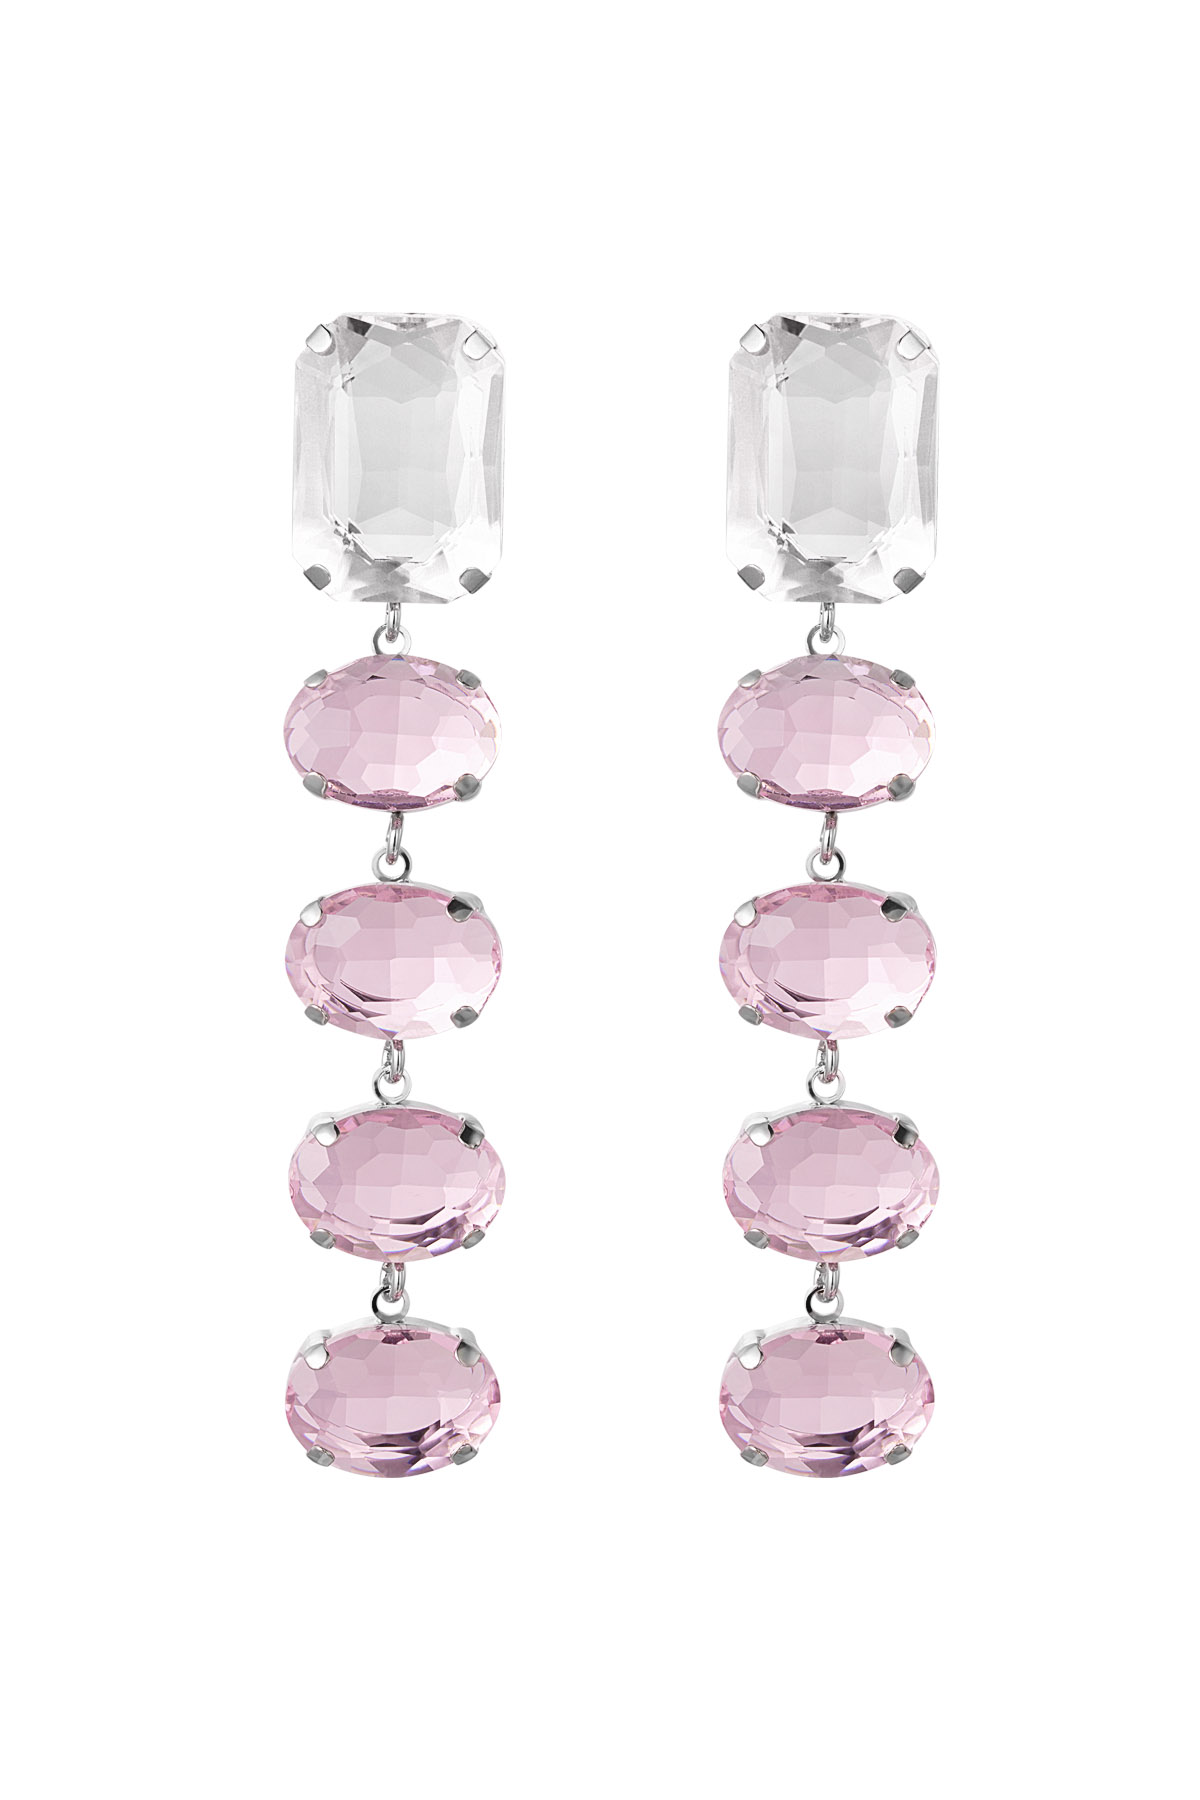 Boucles d'oreilles perles de verre party - Cuivre rose & argenté h5 